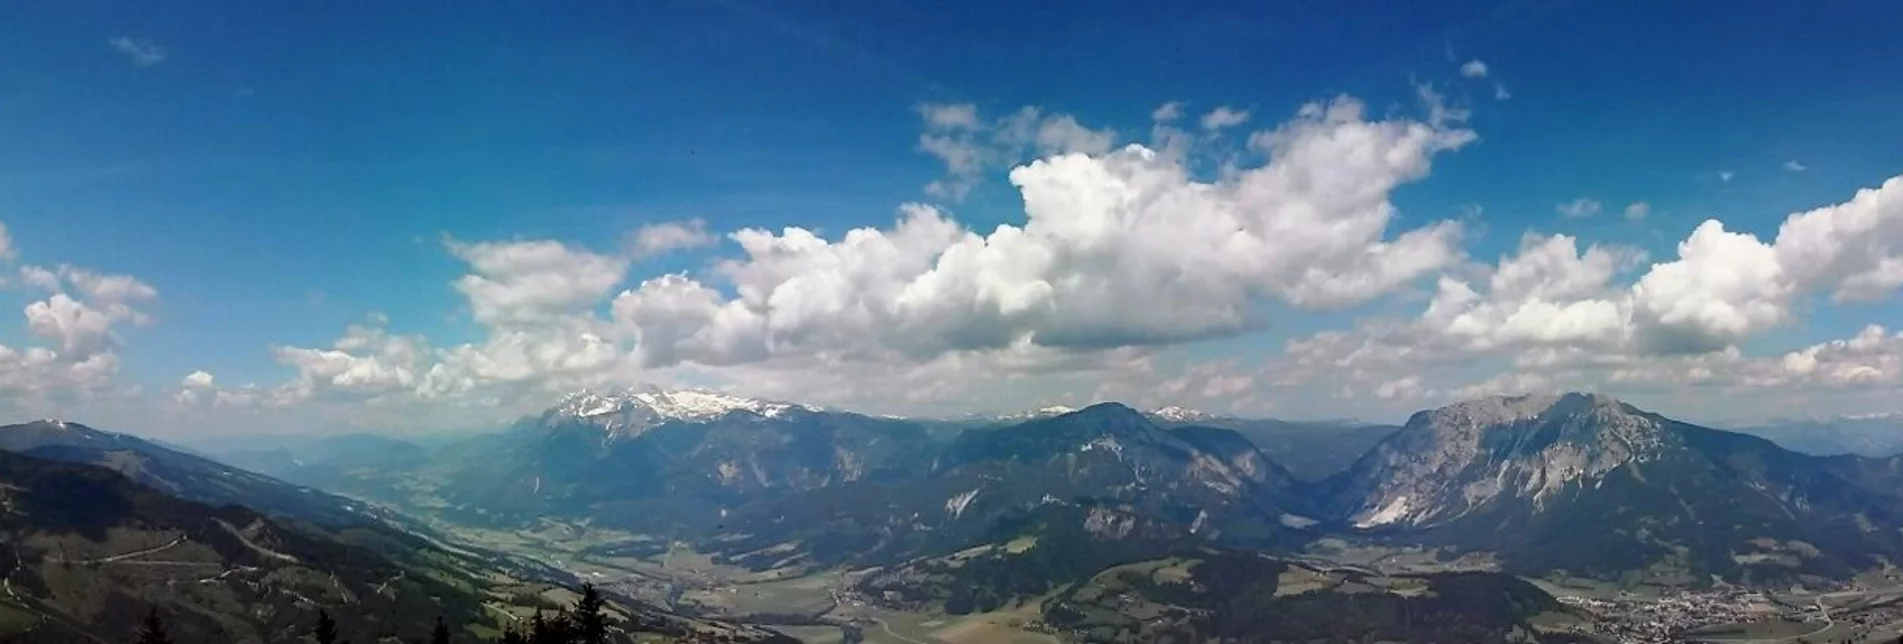 Mountain Hike Kochofen (1,920m), round trip via the Schladming Alm - Touren-Impression #1 | © Erlebnisregion Schladming-Dachstein